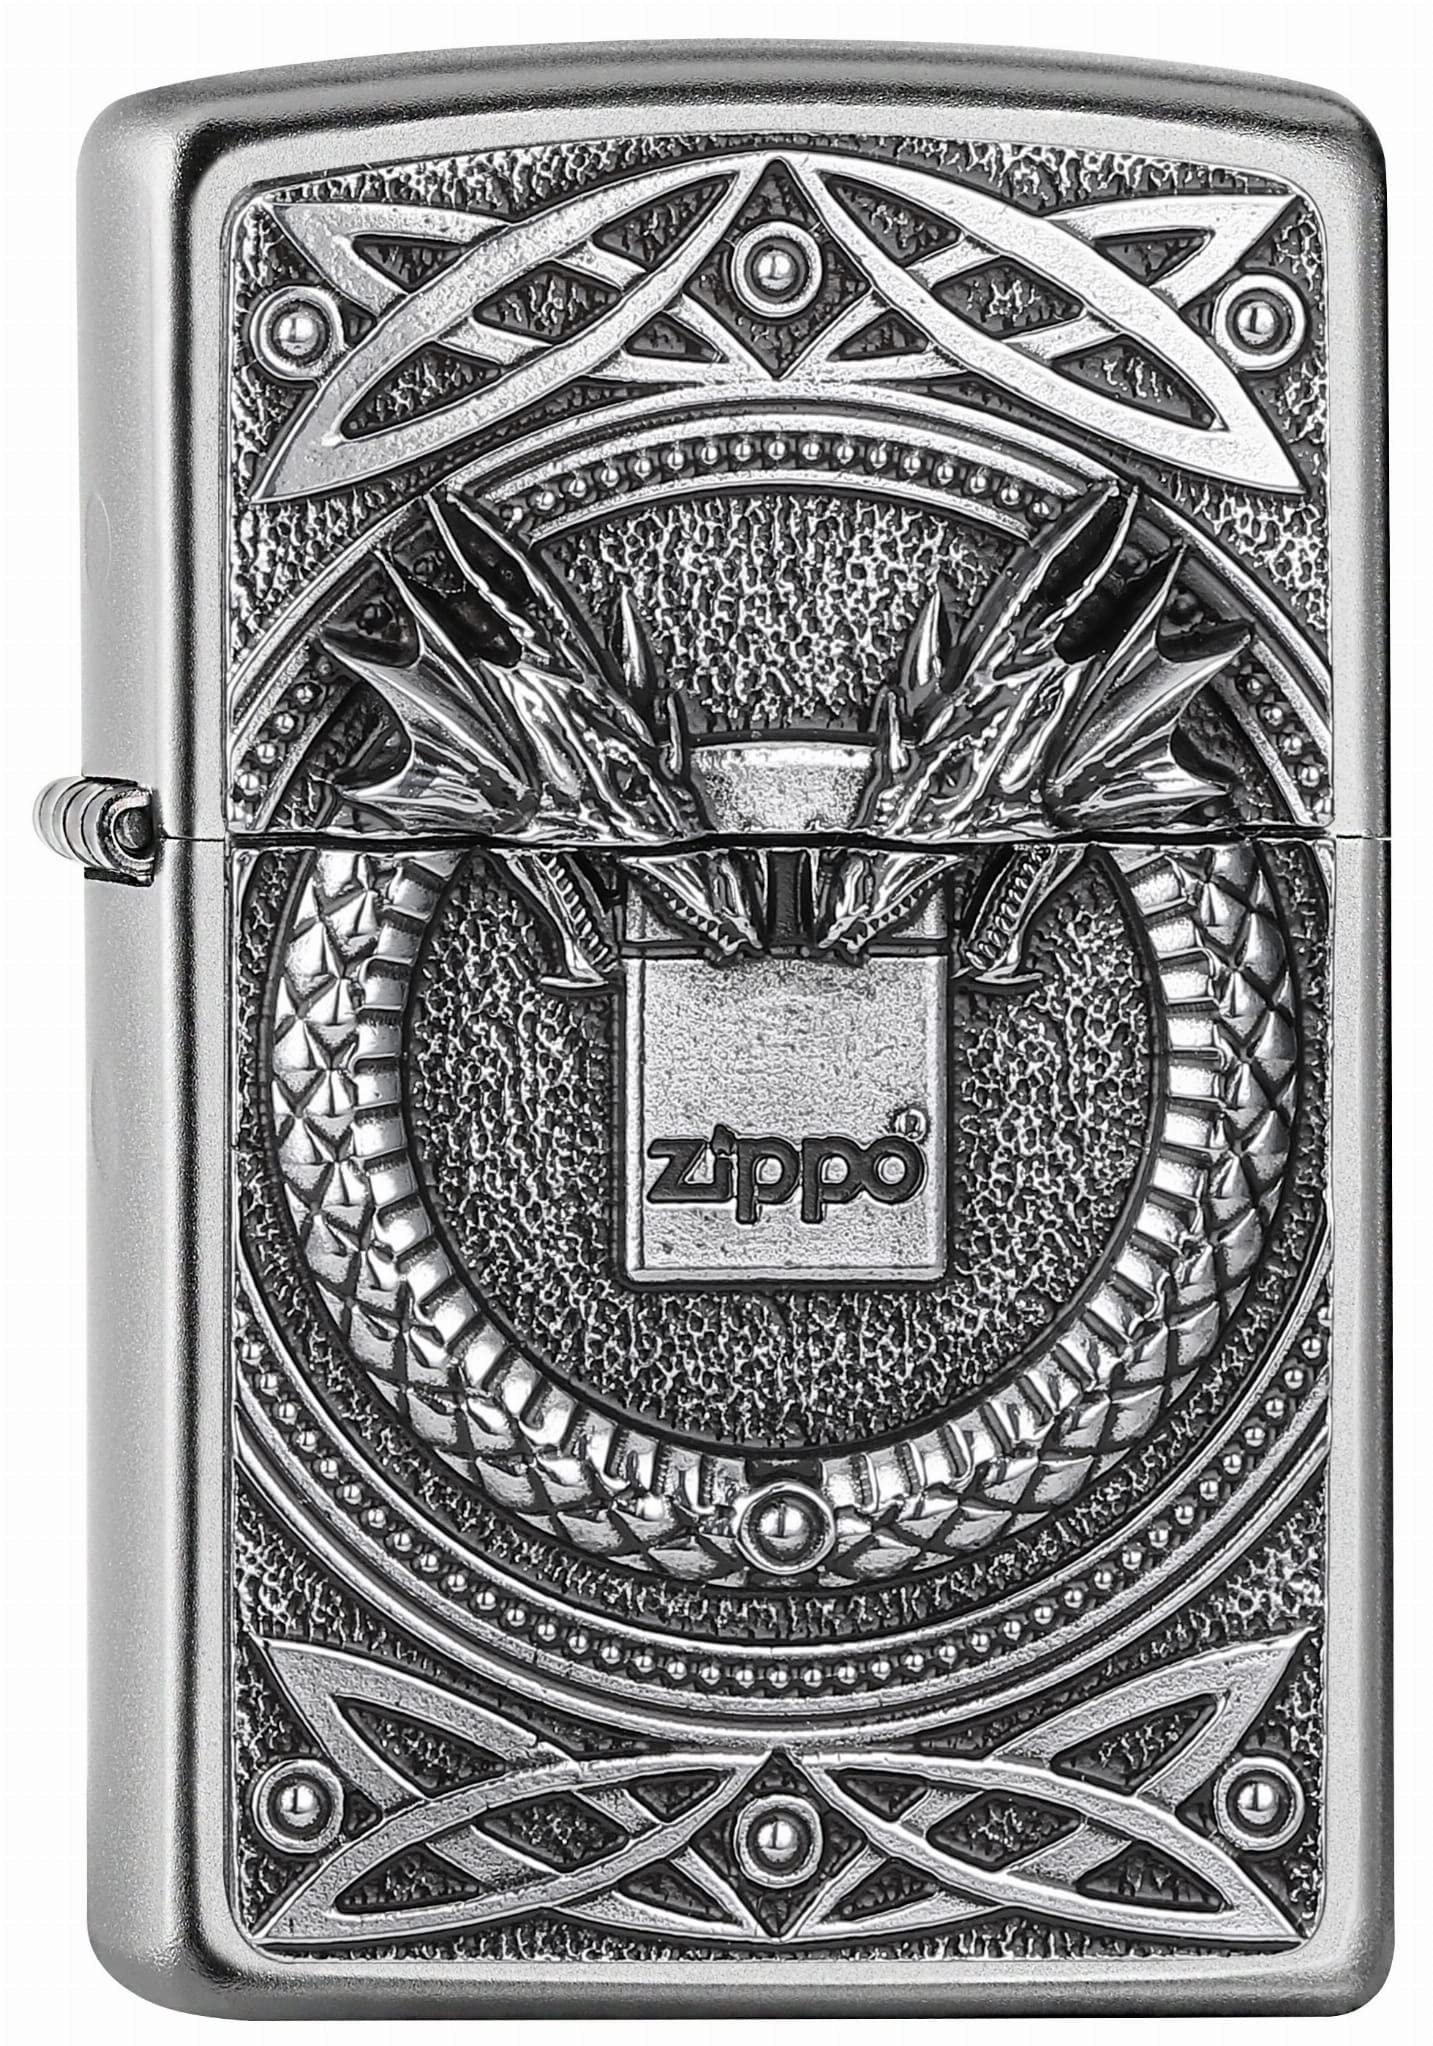 ZIPPO - Benzin - FEUERZEUG - 2007435 Dragons with Zippo